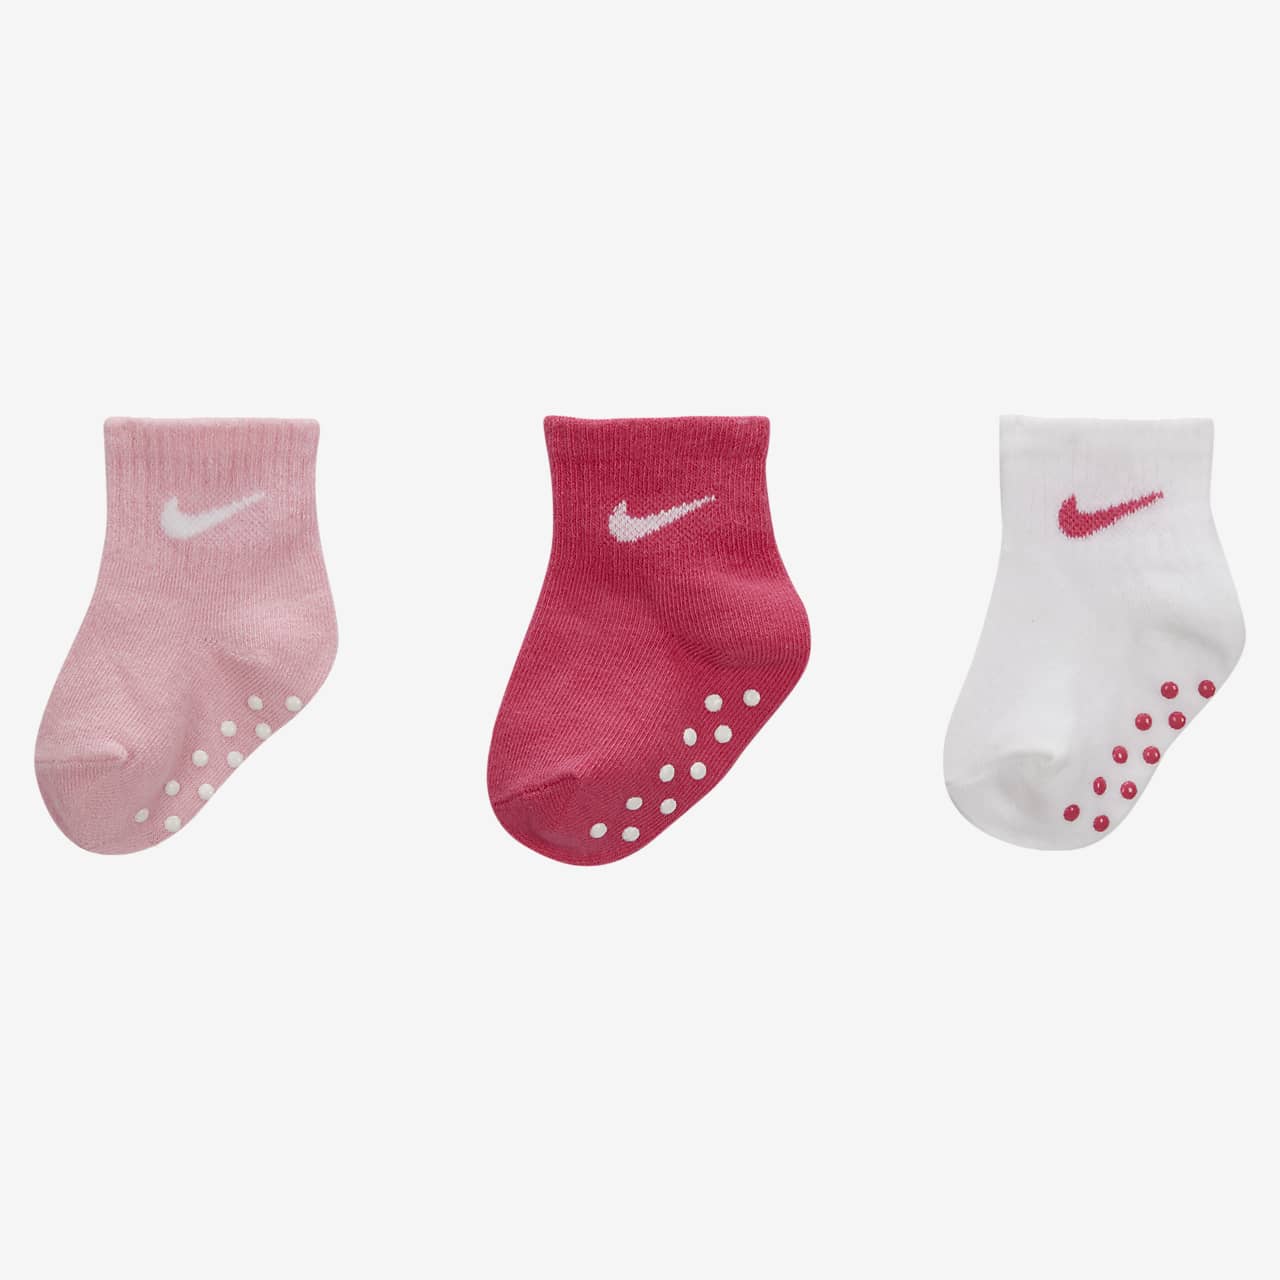 Calcetines hasta el tobillo con para bebé Nike (6 a 12 meses) (3 pares). Nike.com